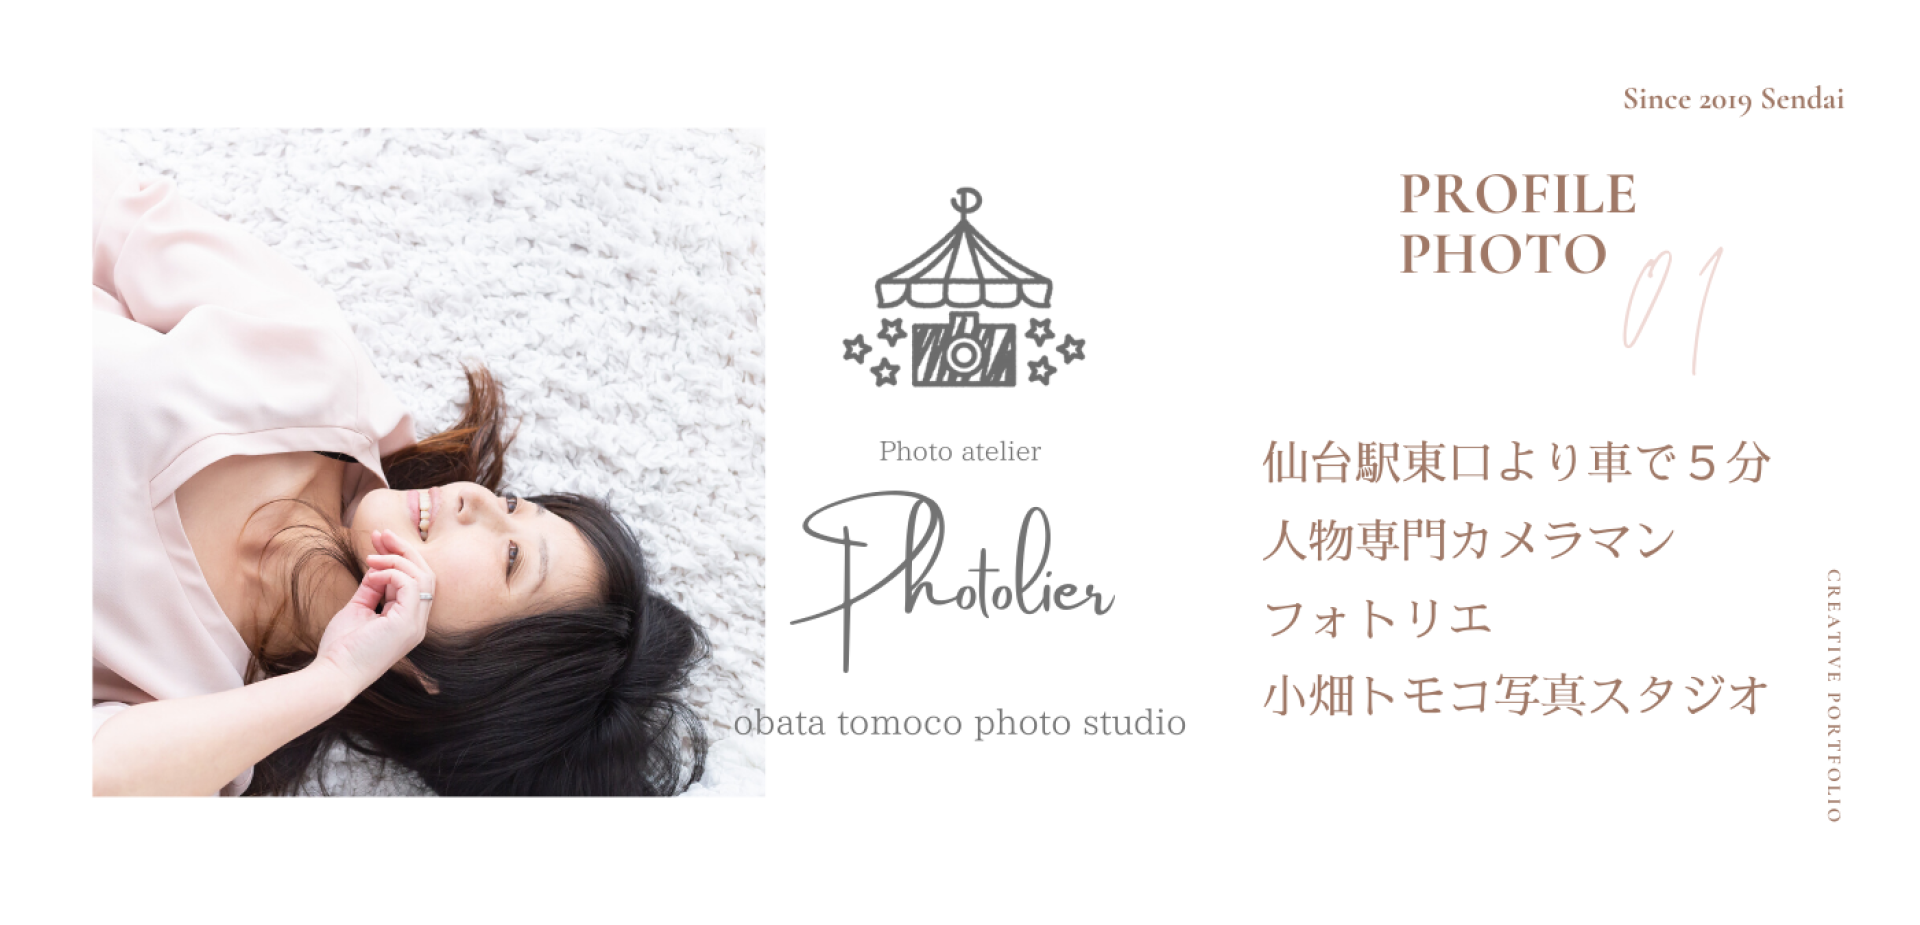 宮城仙台のプロフィール写真・宣材写真なら【Photolierフォトリエ】女性カメラマンが撮影します